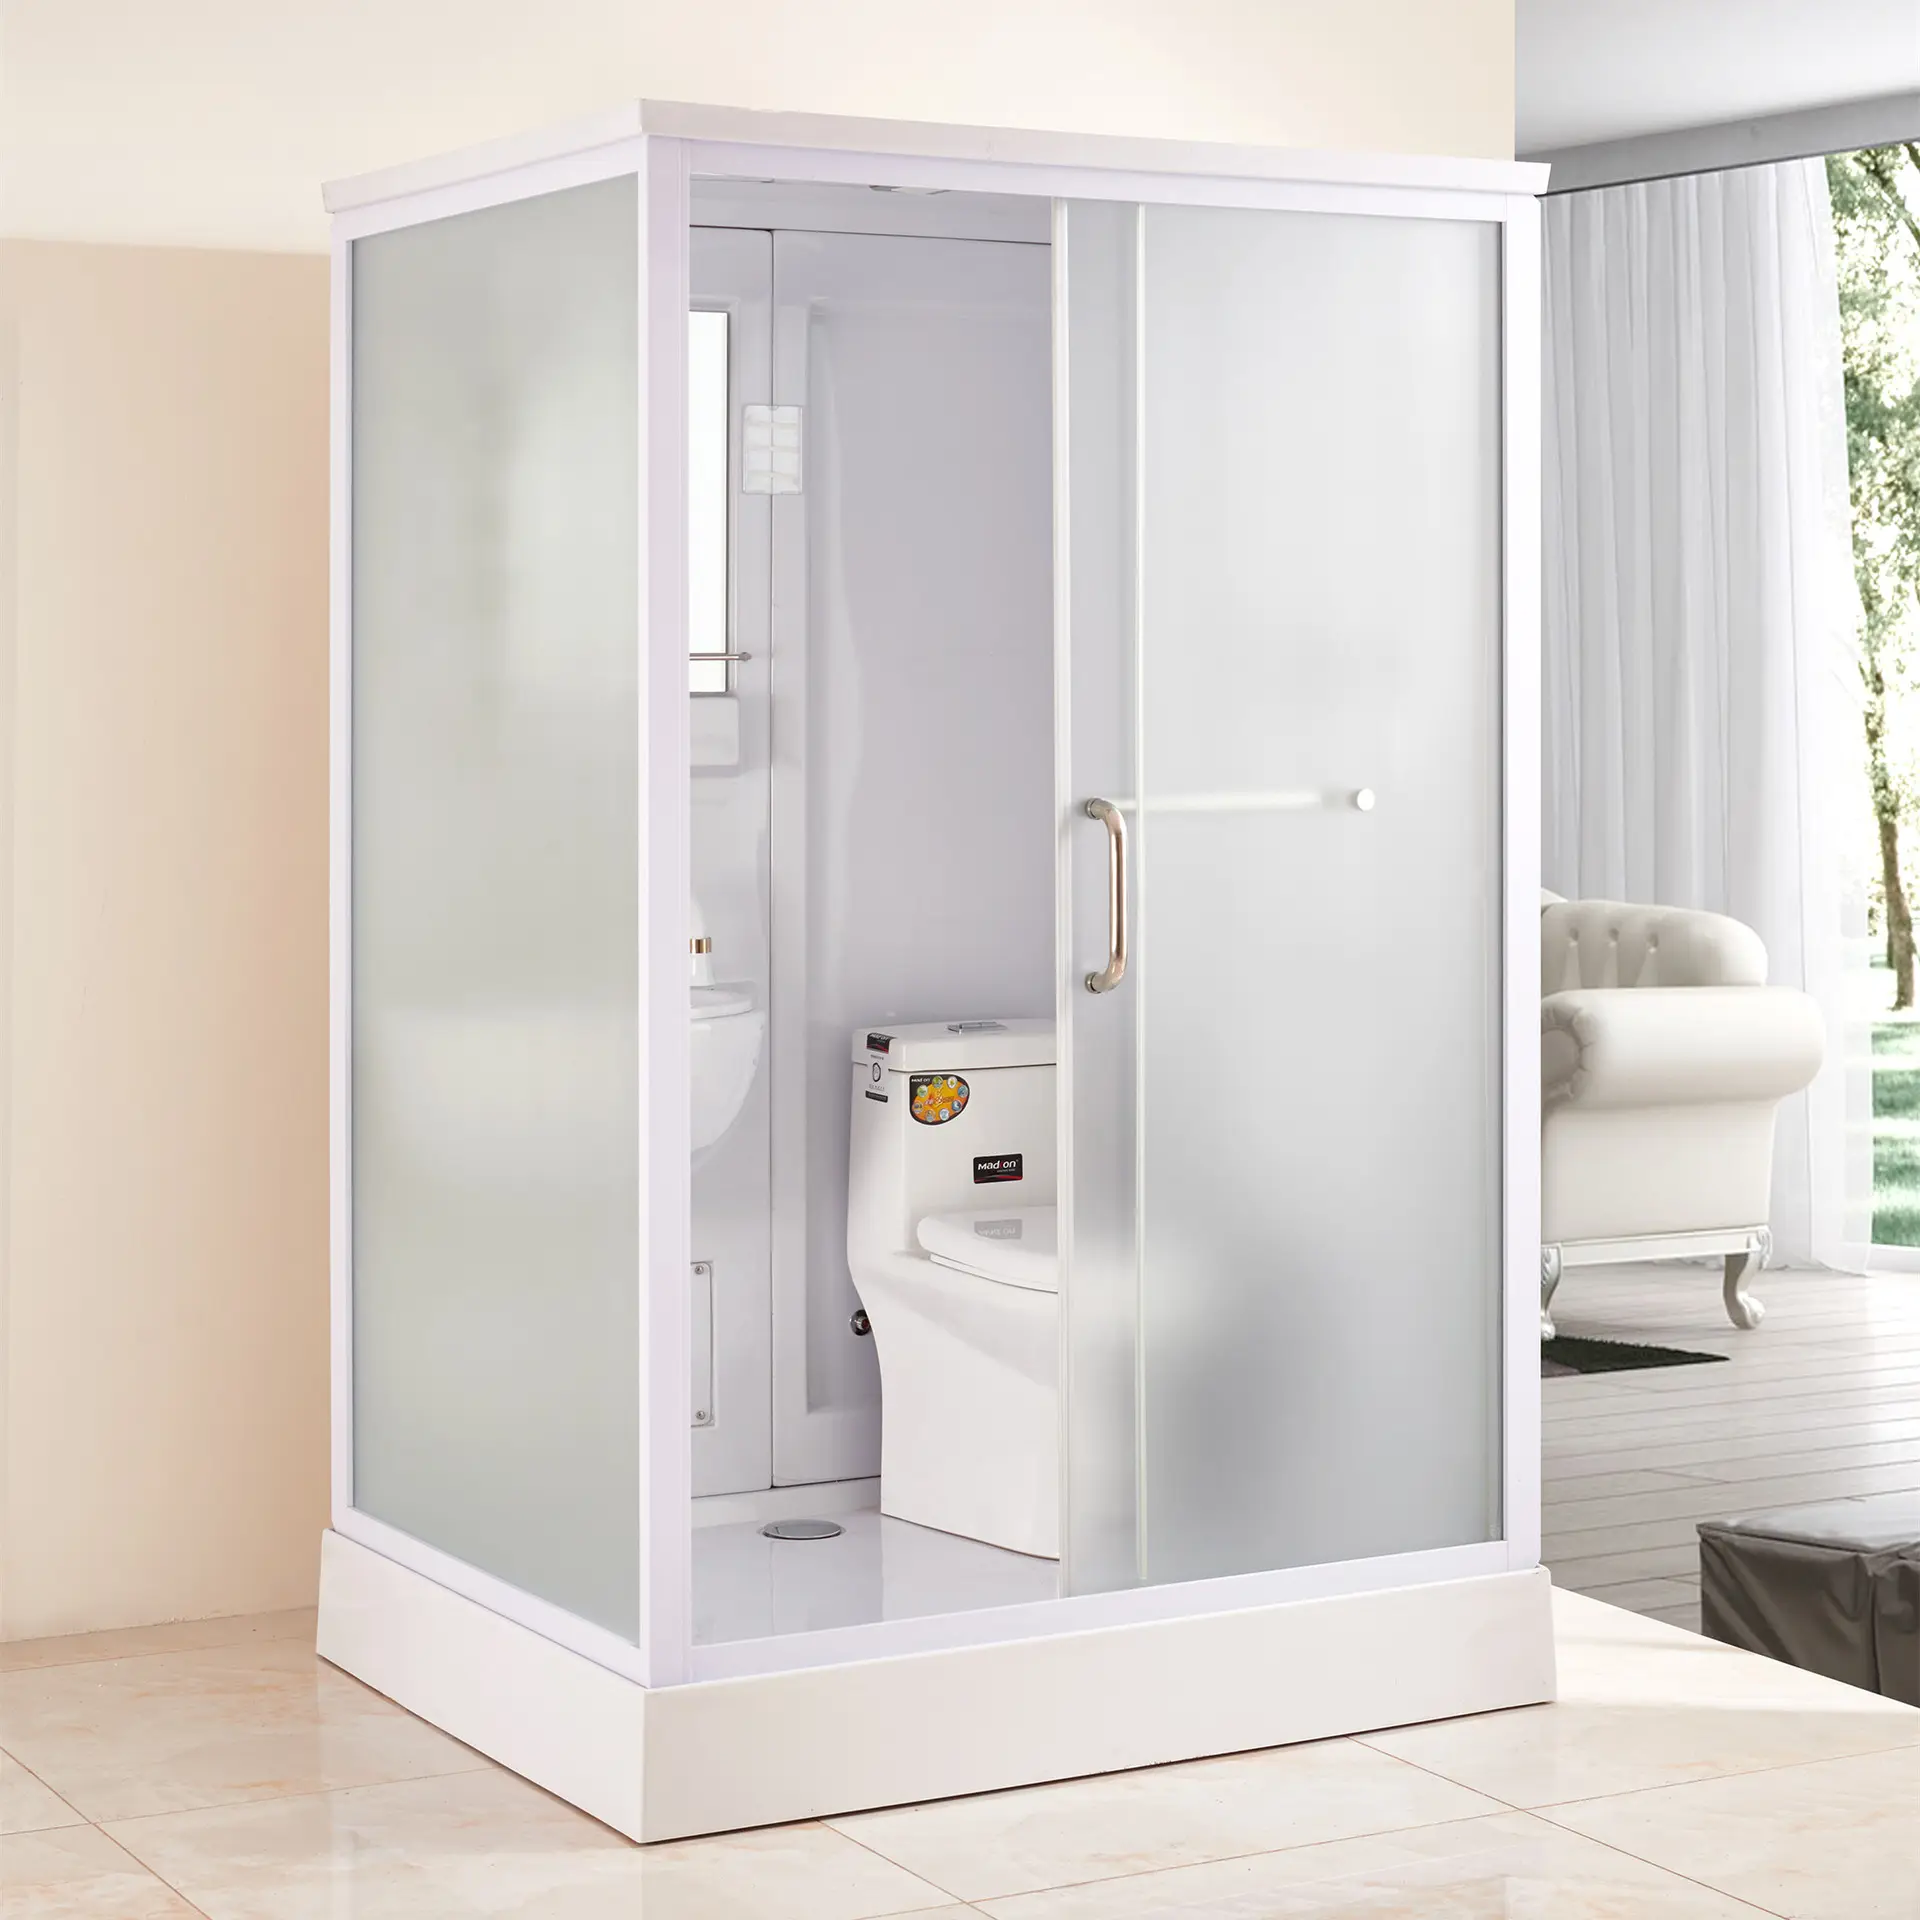 غرفة الاستحمام بسيطة تصميم المحمولة مقصورة للدش دش غرفة مع دوامة 5 مللي متر الزجاج المقسى